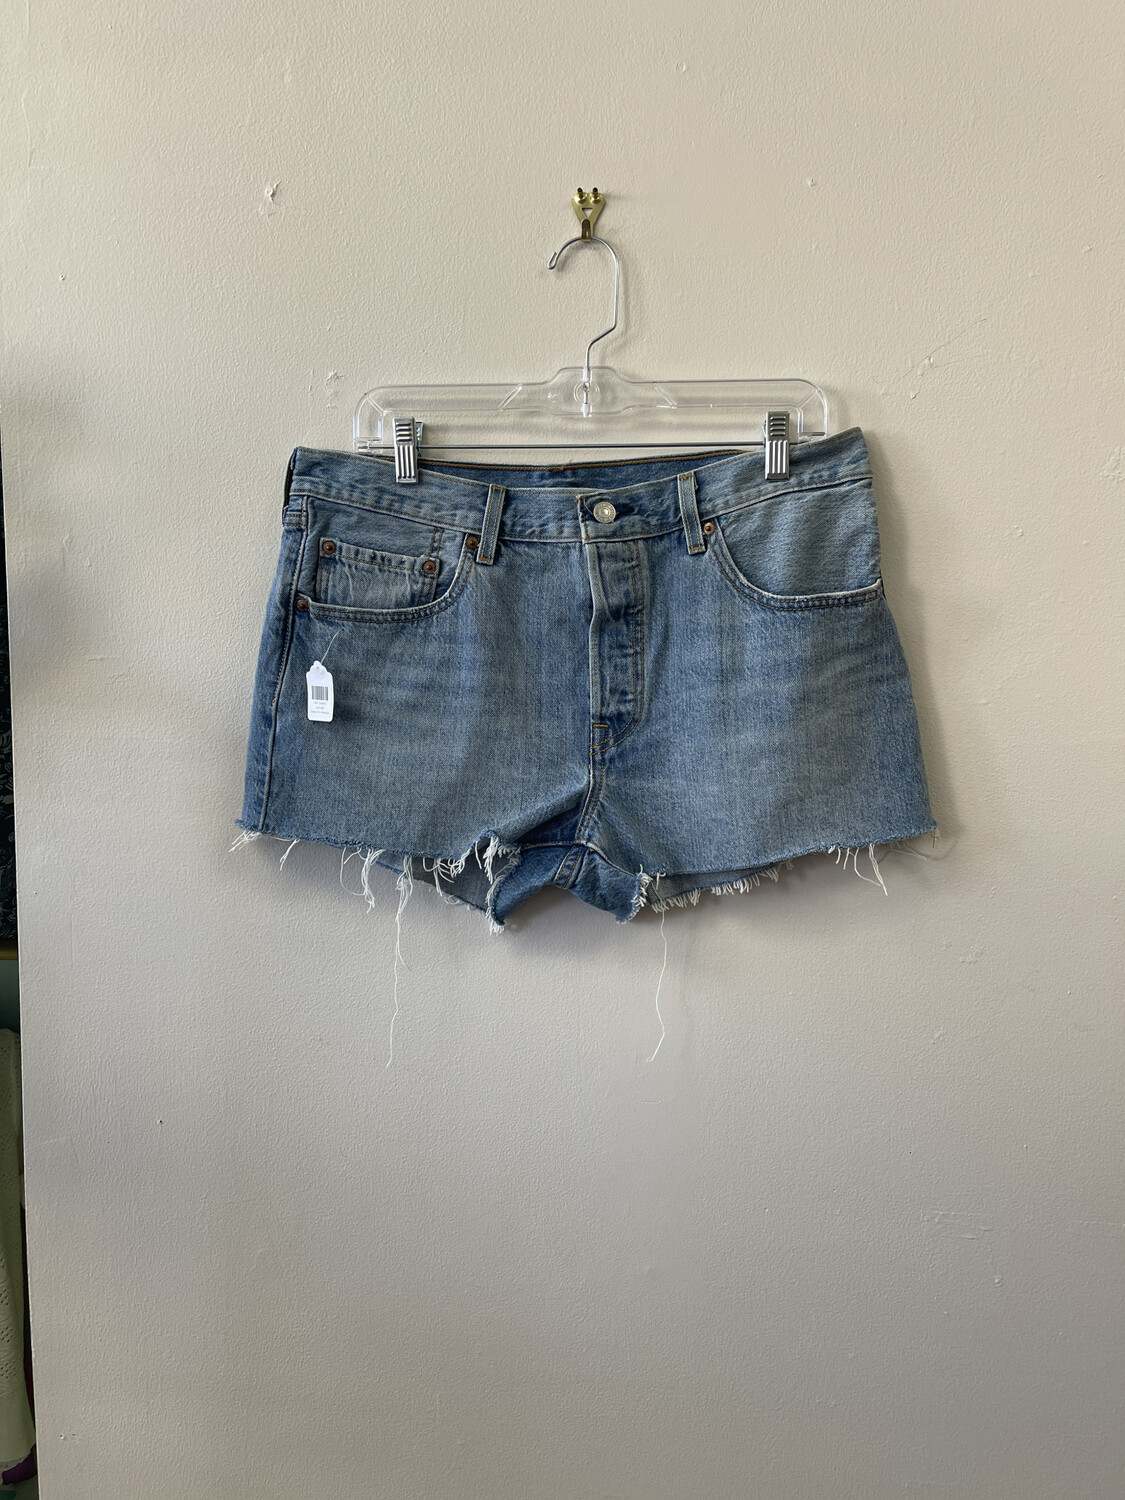 Levi's 501 Shorts, Size 31